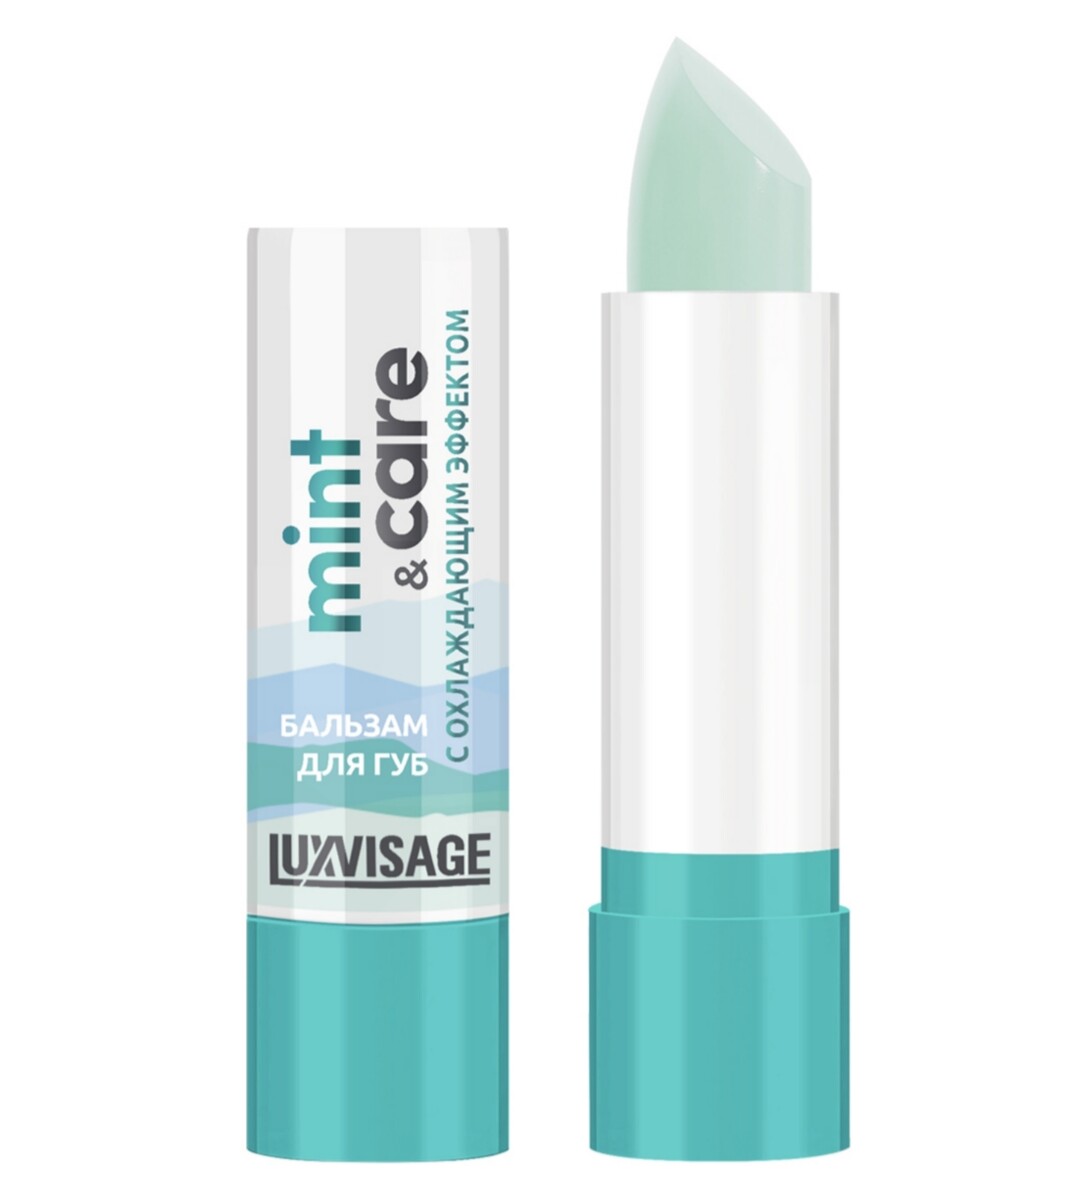 Luxvisage бальзам для губ luxvisage mint & care с охлаждающим эффектом 3,9г бальзам для губ luxvisage mint